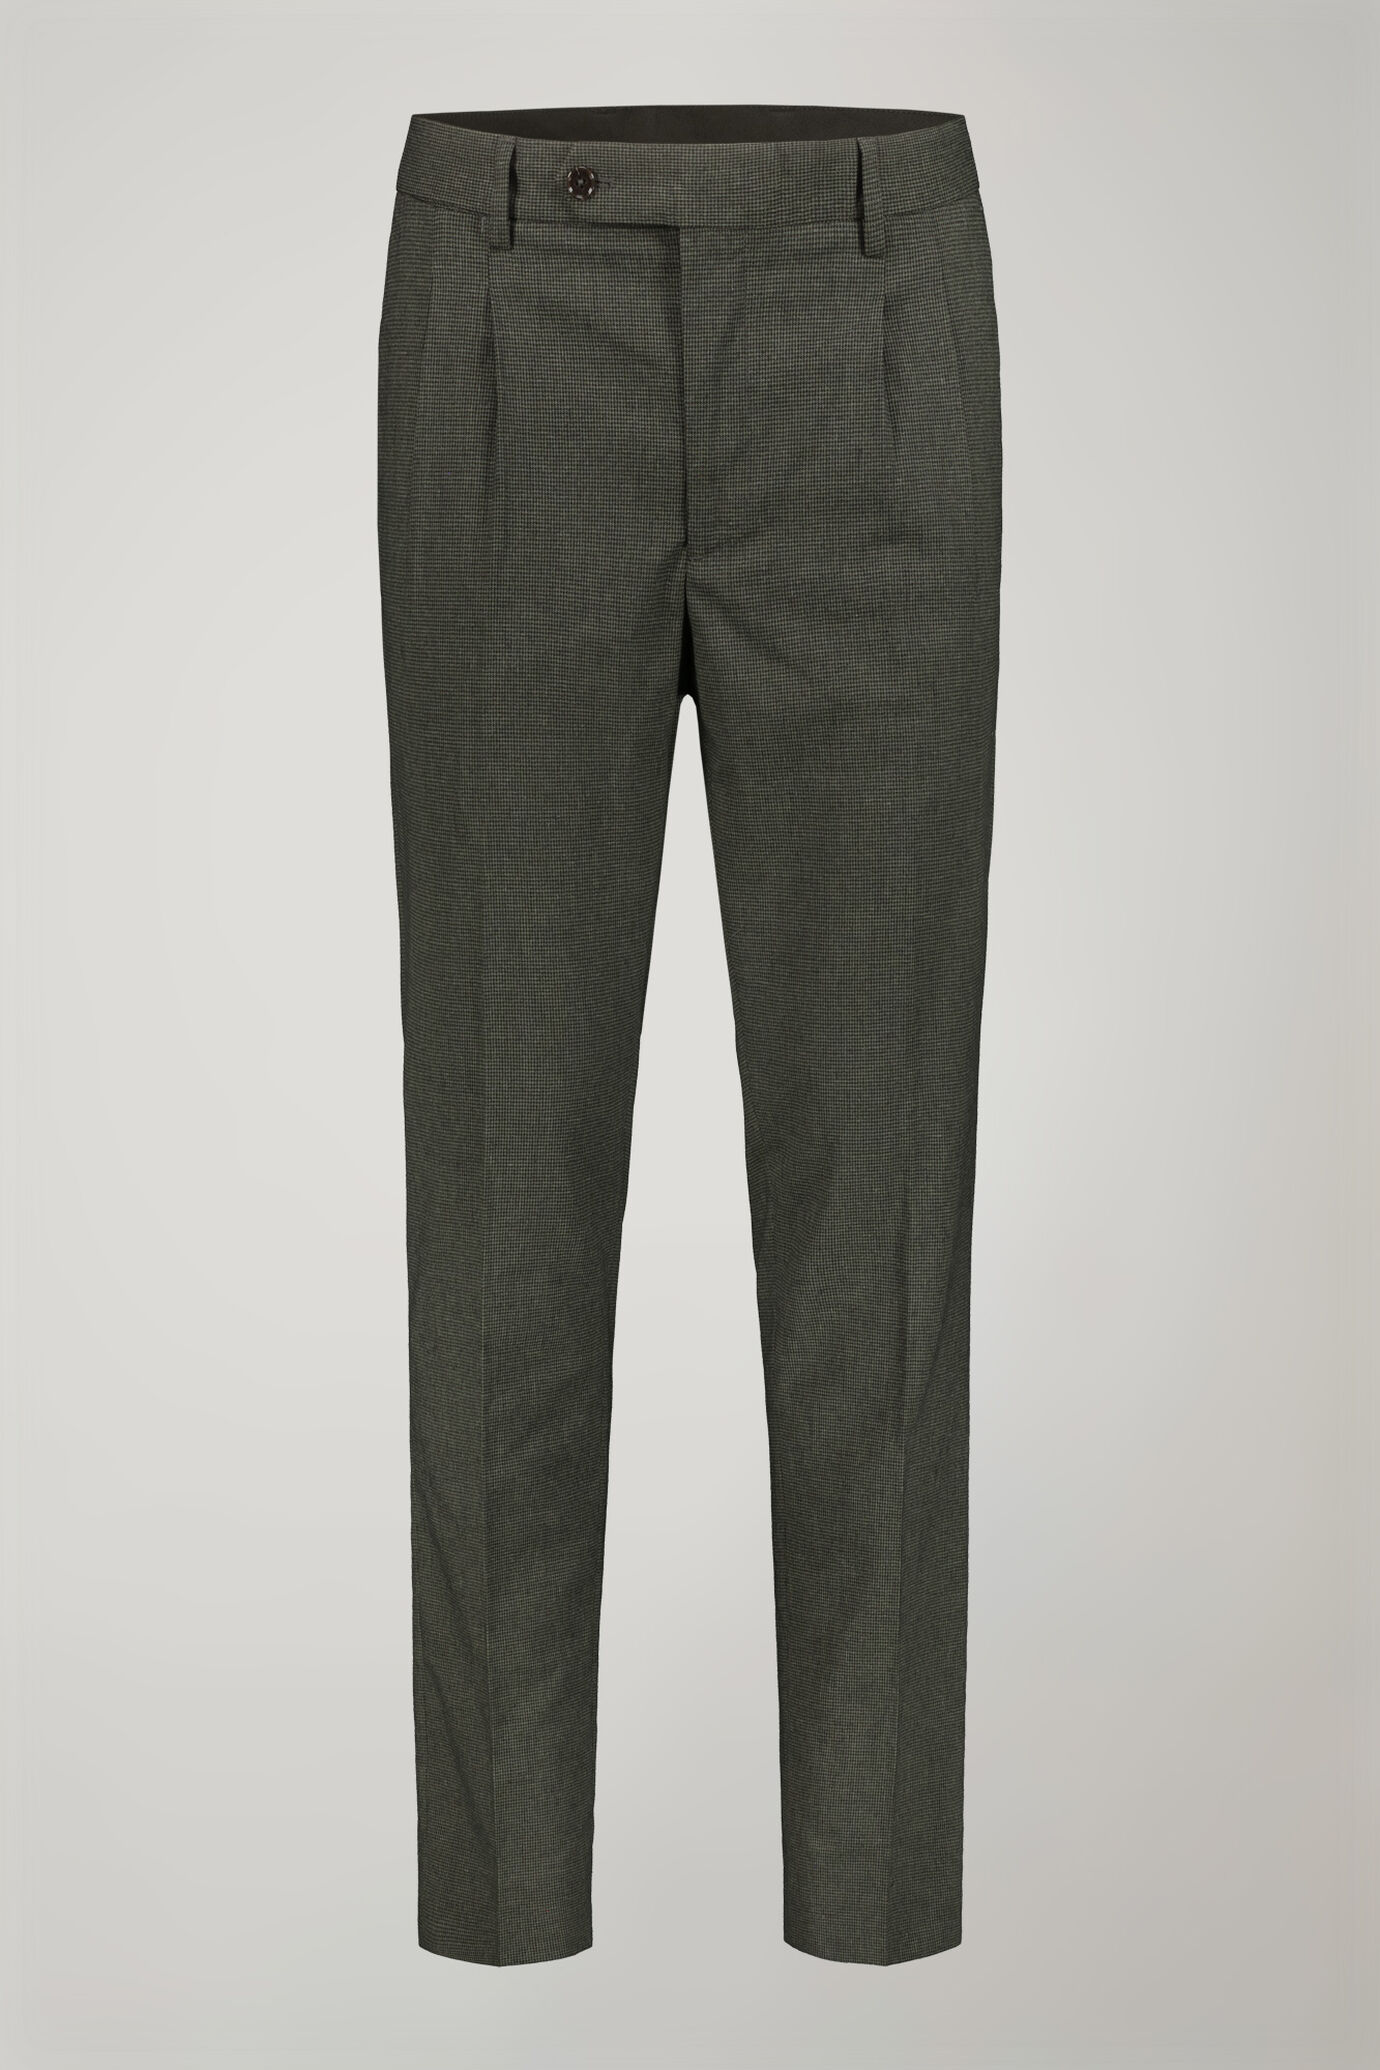 Pantalon homme classique à double pince, tissu avec motif micro pied-de-poule coupe régulière image number 4